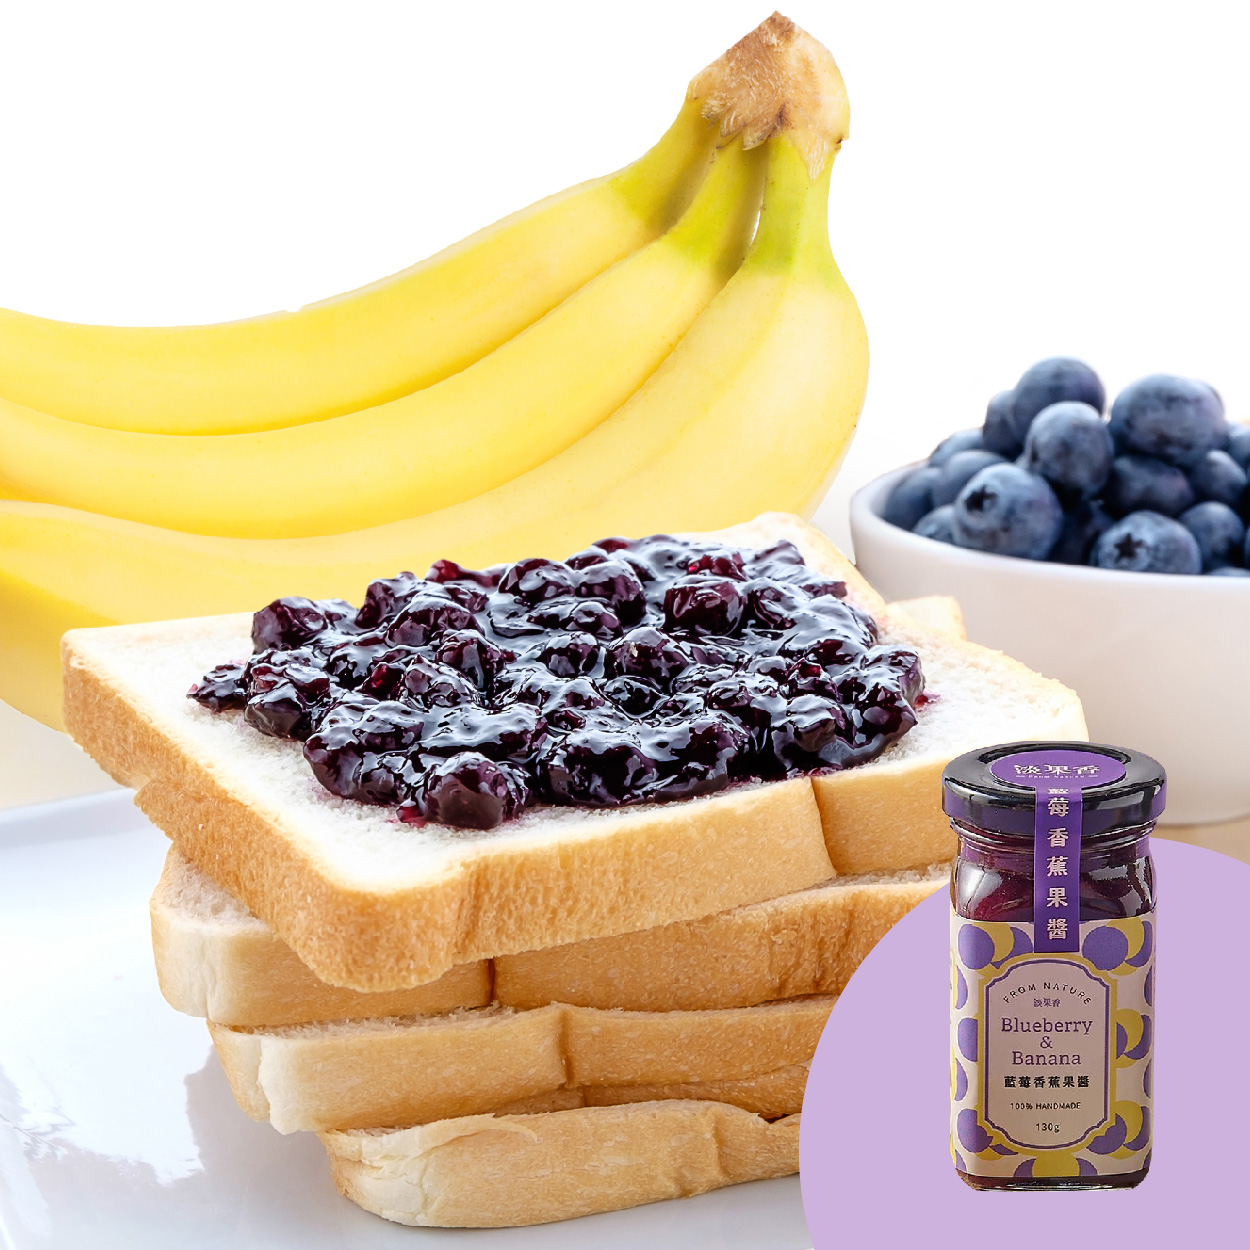 淡果香 藍莓香蕉果醬 100%手工製作 無人工添加物 品嚐得到原味果粒